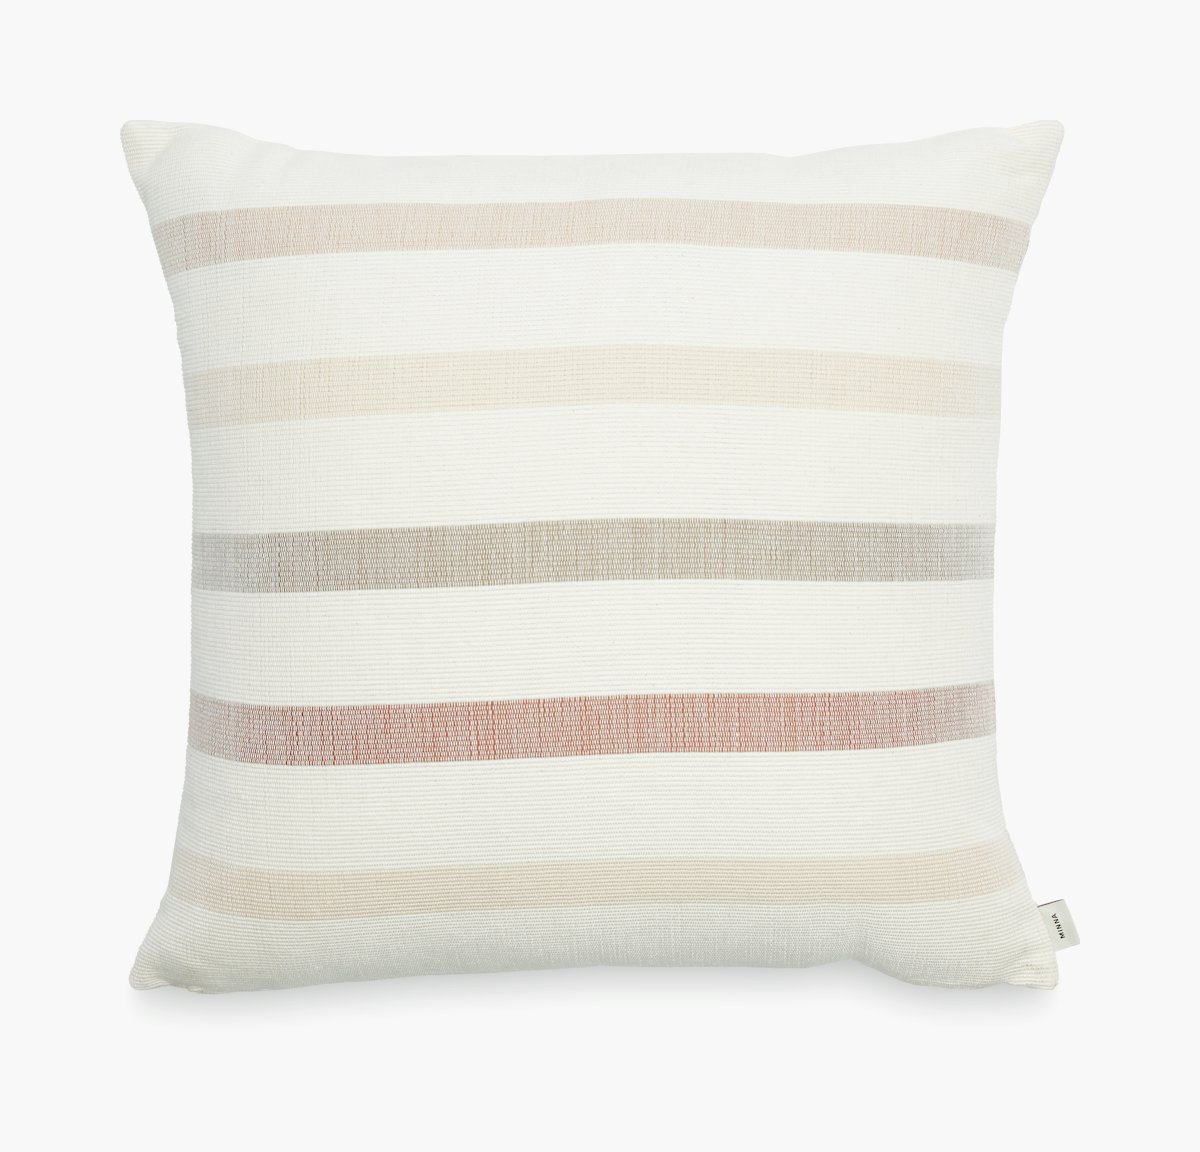 Condesa Stripe Pillow